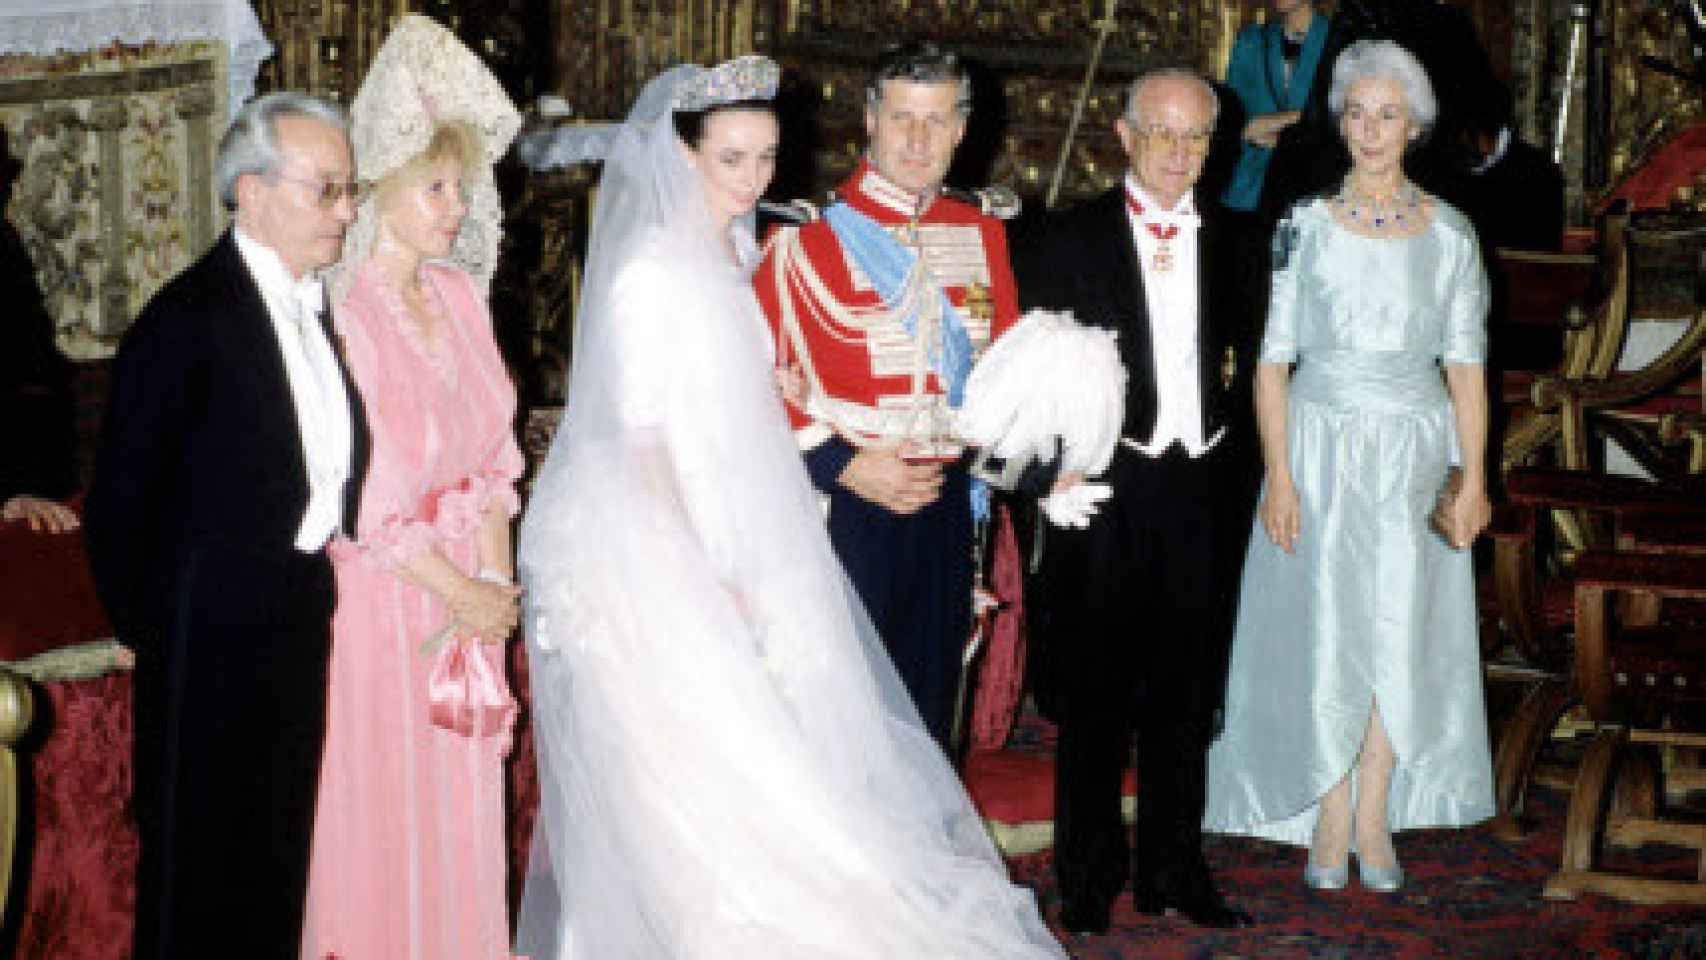 La boda de Carlos Fitz-James Stuart con Maltide Solís. A su izquierda, la duquesa de Alba vistiendo un vestido de Meye Maier.